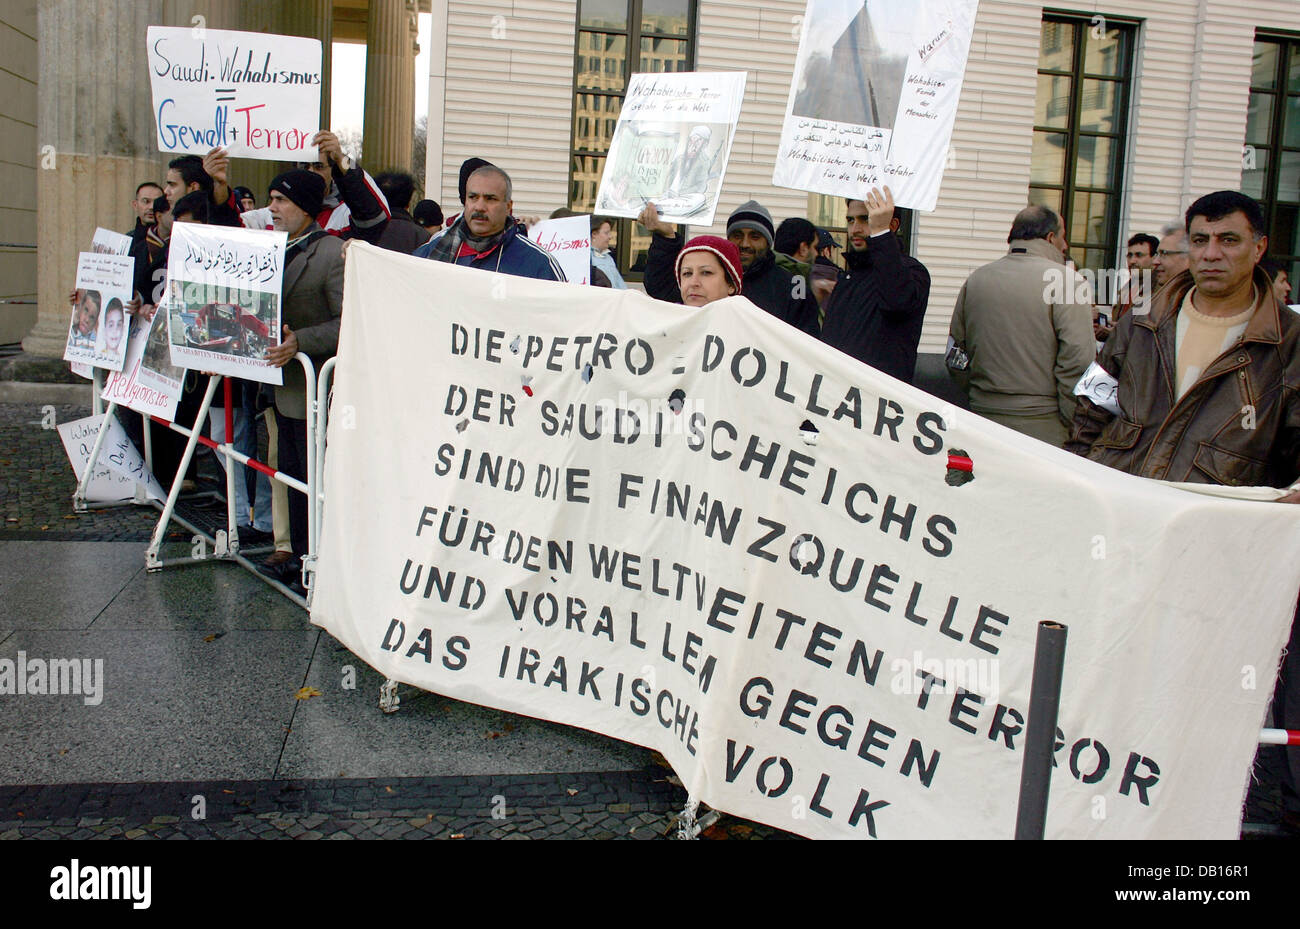 Demonstraters la plupart des Irakiens manifestation devant l'hôtel Adlon contre la visite du roi d'Arabie saoudite à Berlin, Allemagne, 7 novembre 2007. Le roi sera accueilli par le Chancelier allemand cet après-midi à Berlin. Les manifestants accusent le roi d'être responsable de la terreur islamique. Photo : GERO BRELOER Banque D'Images